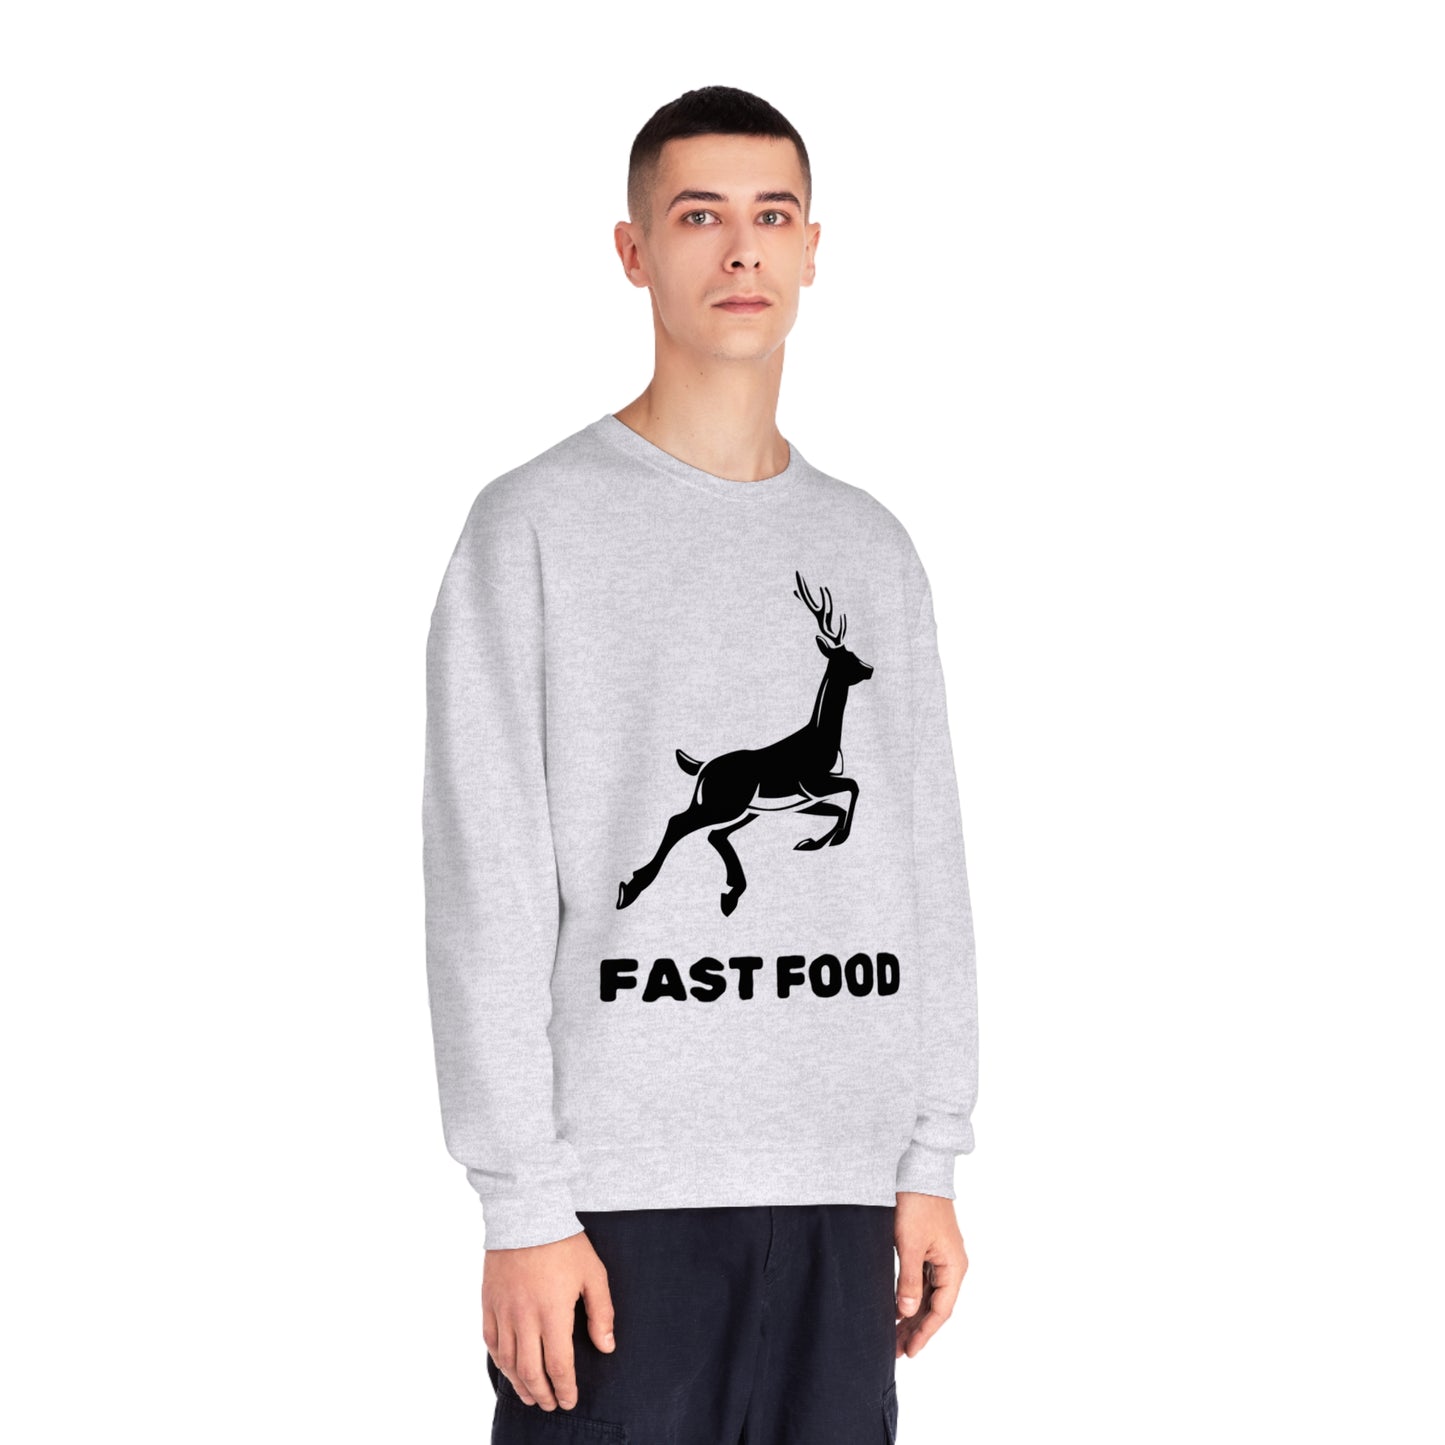 Fast Food - Unisex NuBlend® Crewneck Hunting Sweatshirt